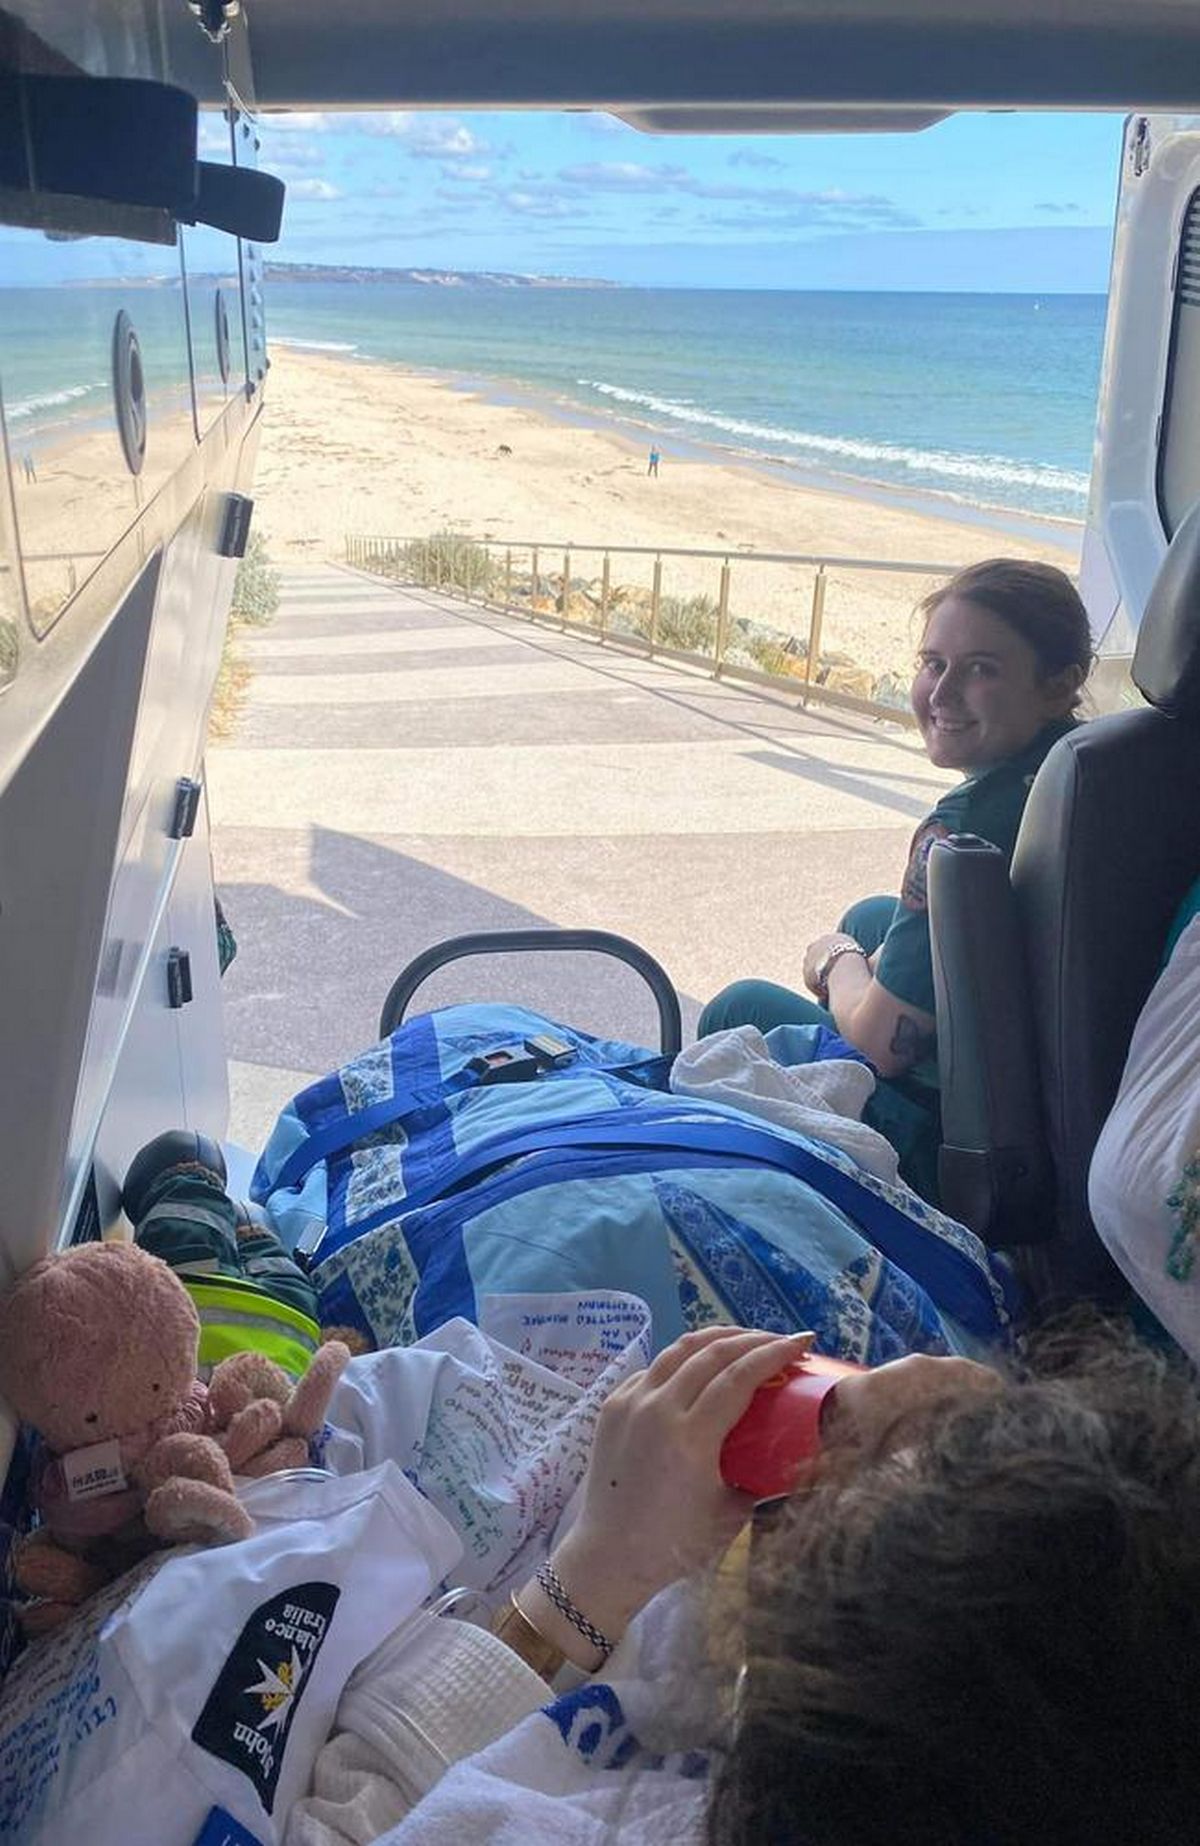 Danika Pederzolli a récemment accompagné Lily au bord de la mer. Le duo était assis à l’arrière d’une ambulance ouverte, contemplant la beauté de l’océan.